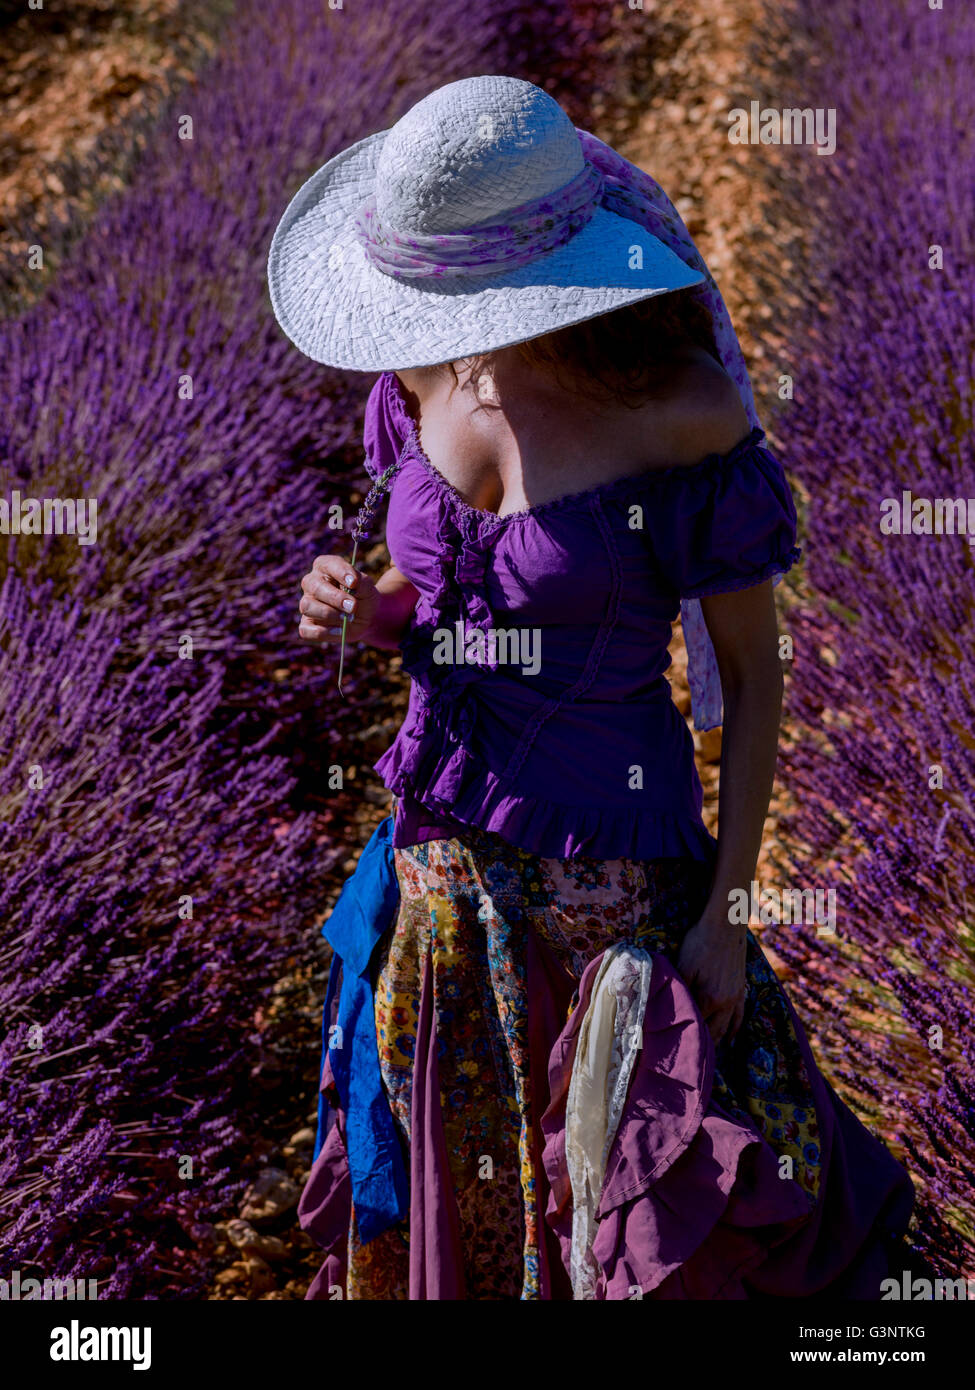 Woman with hat dans un champ de lavande Banque D'Images